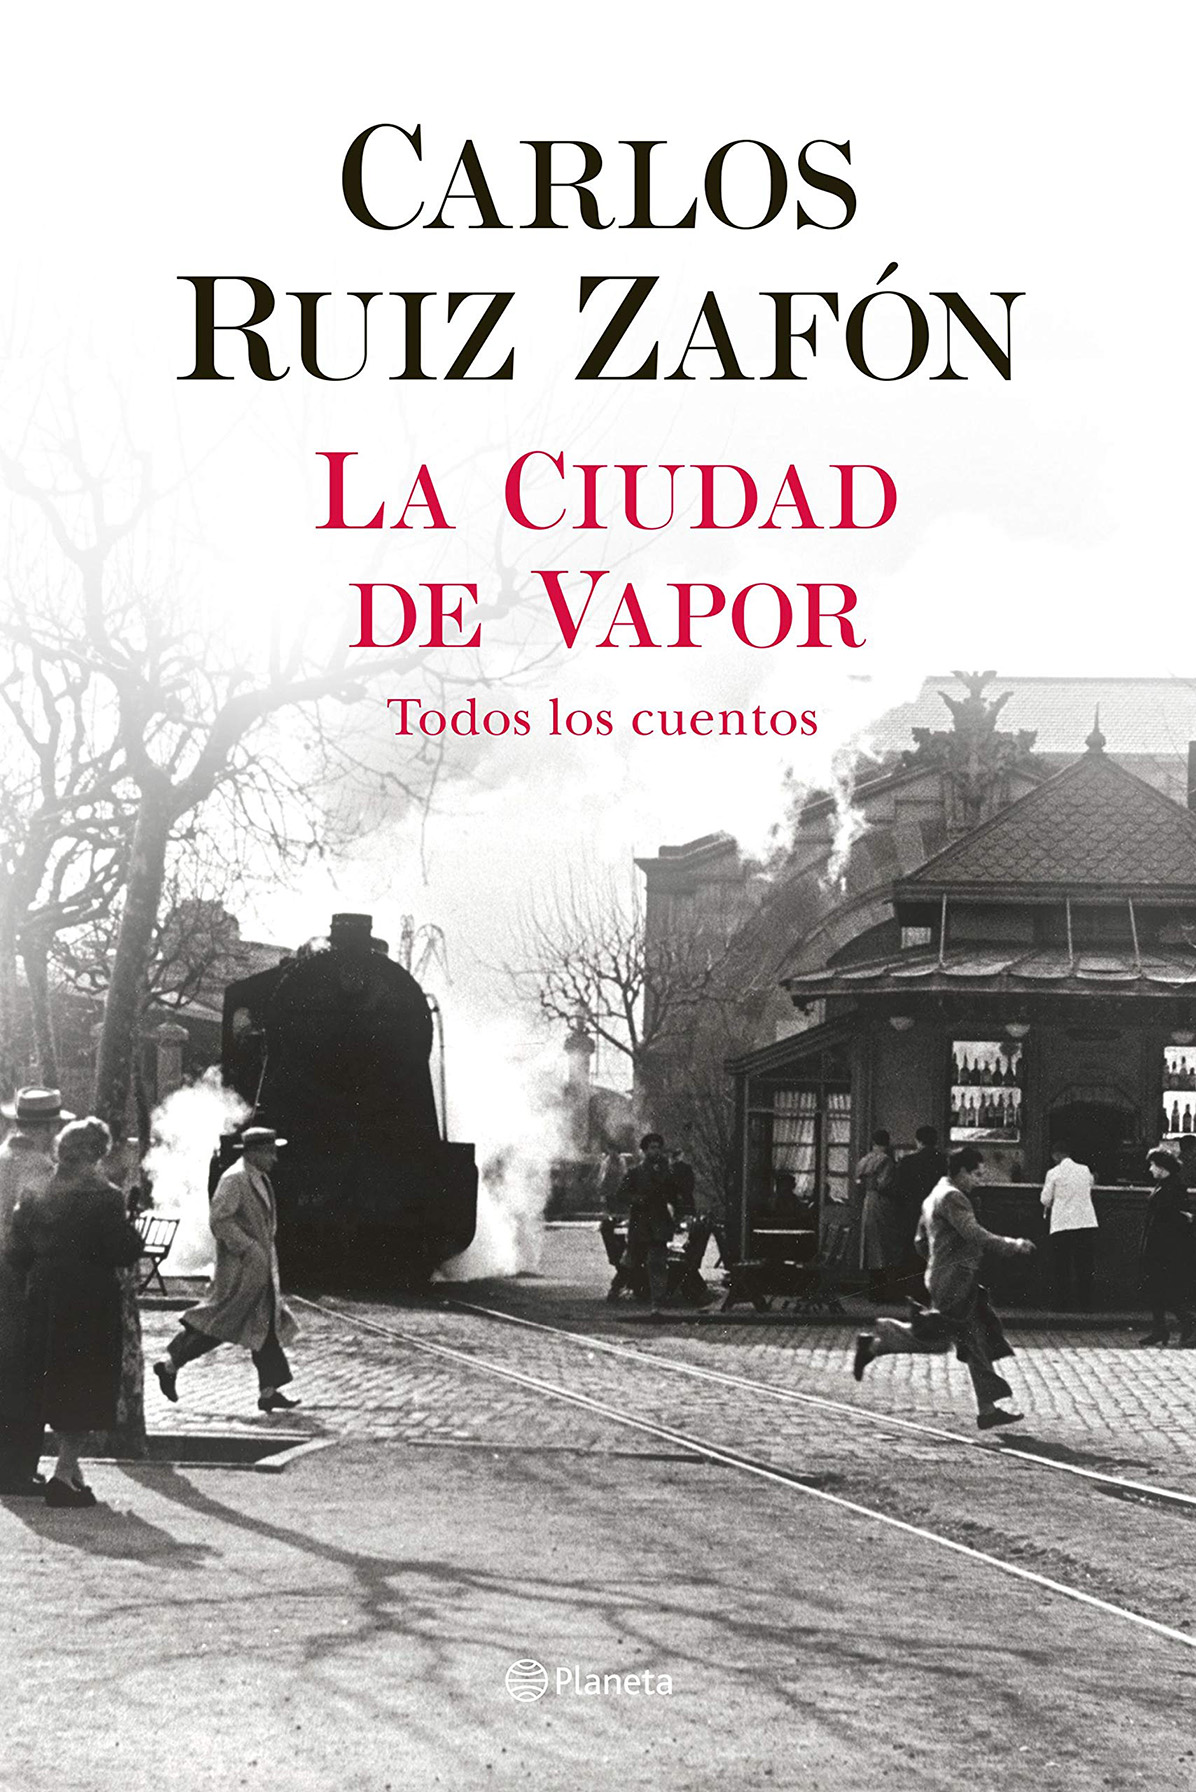 La ciudad de vapor (Carlos Ruiz Zafón, 2020)